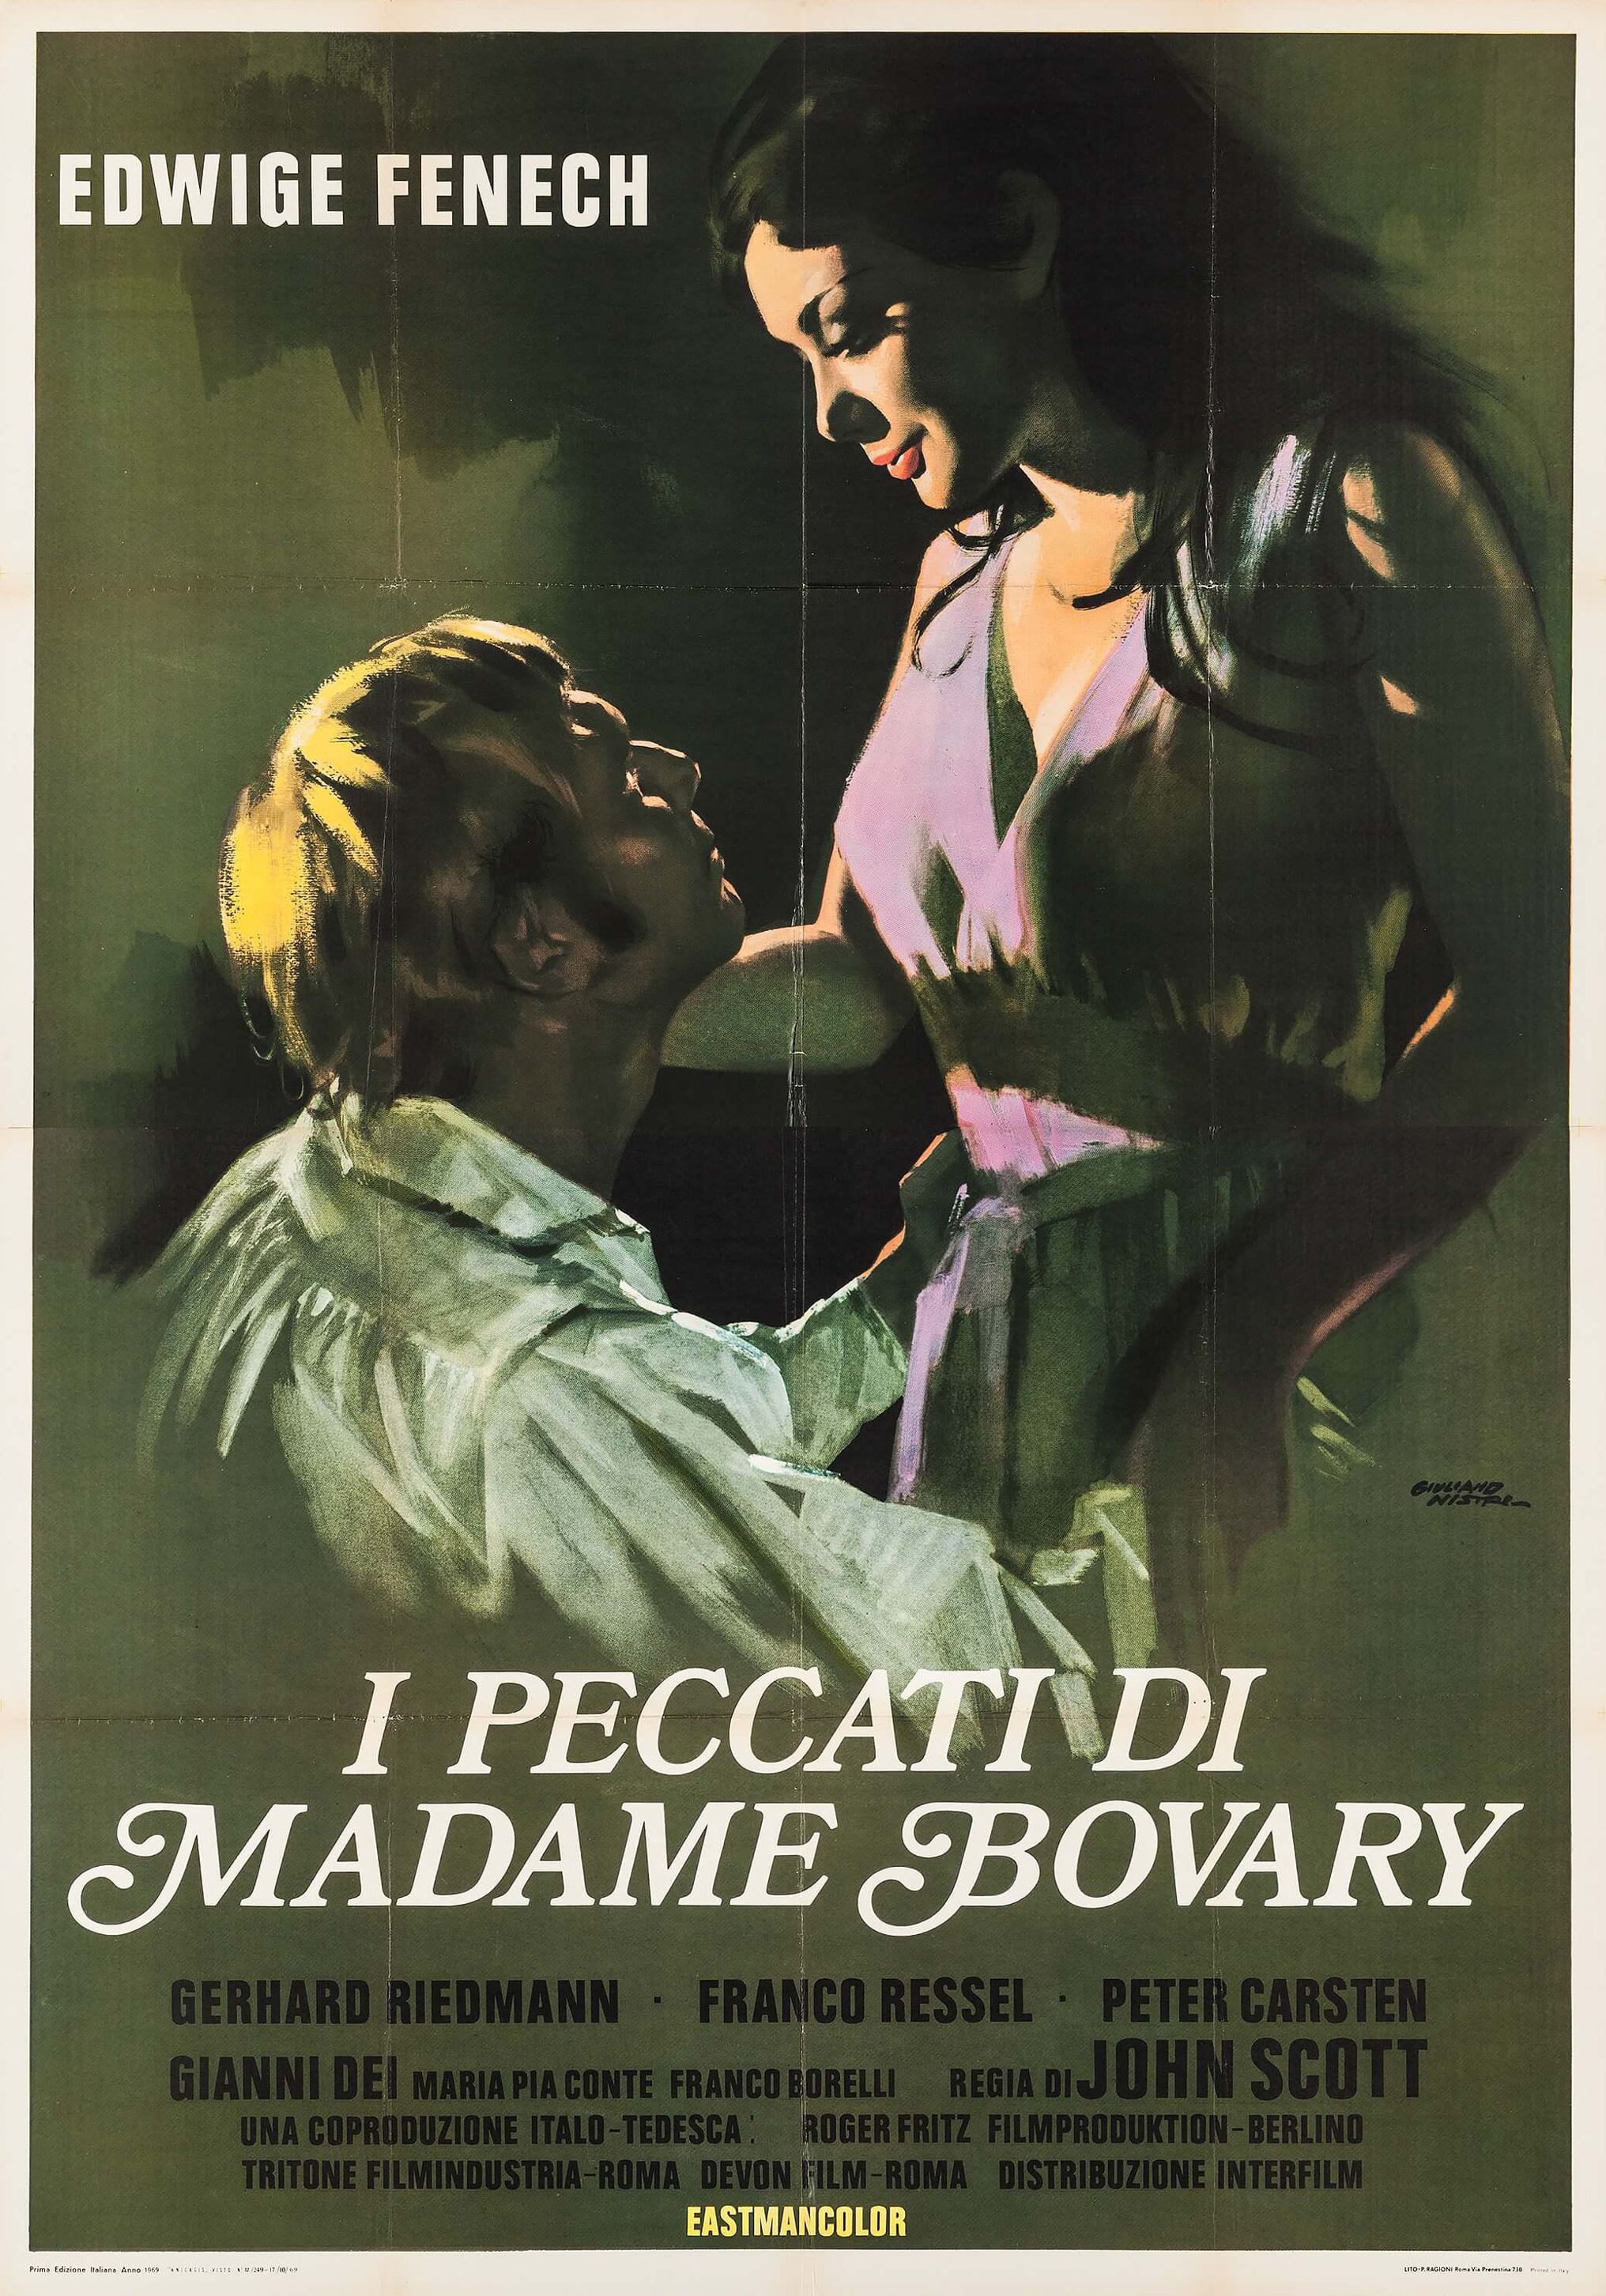 Die nackte Bovary (1969) Screenshot 4 